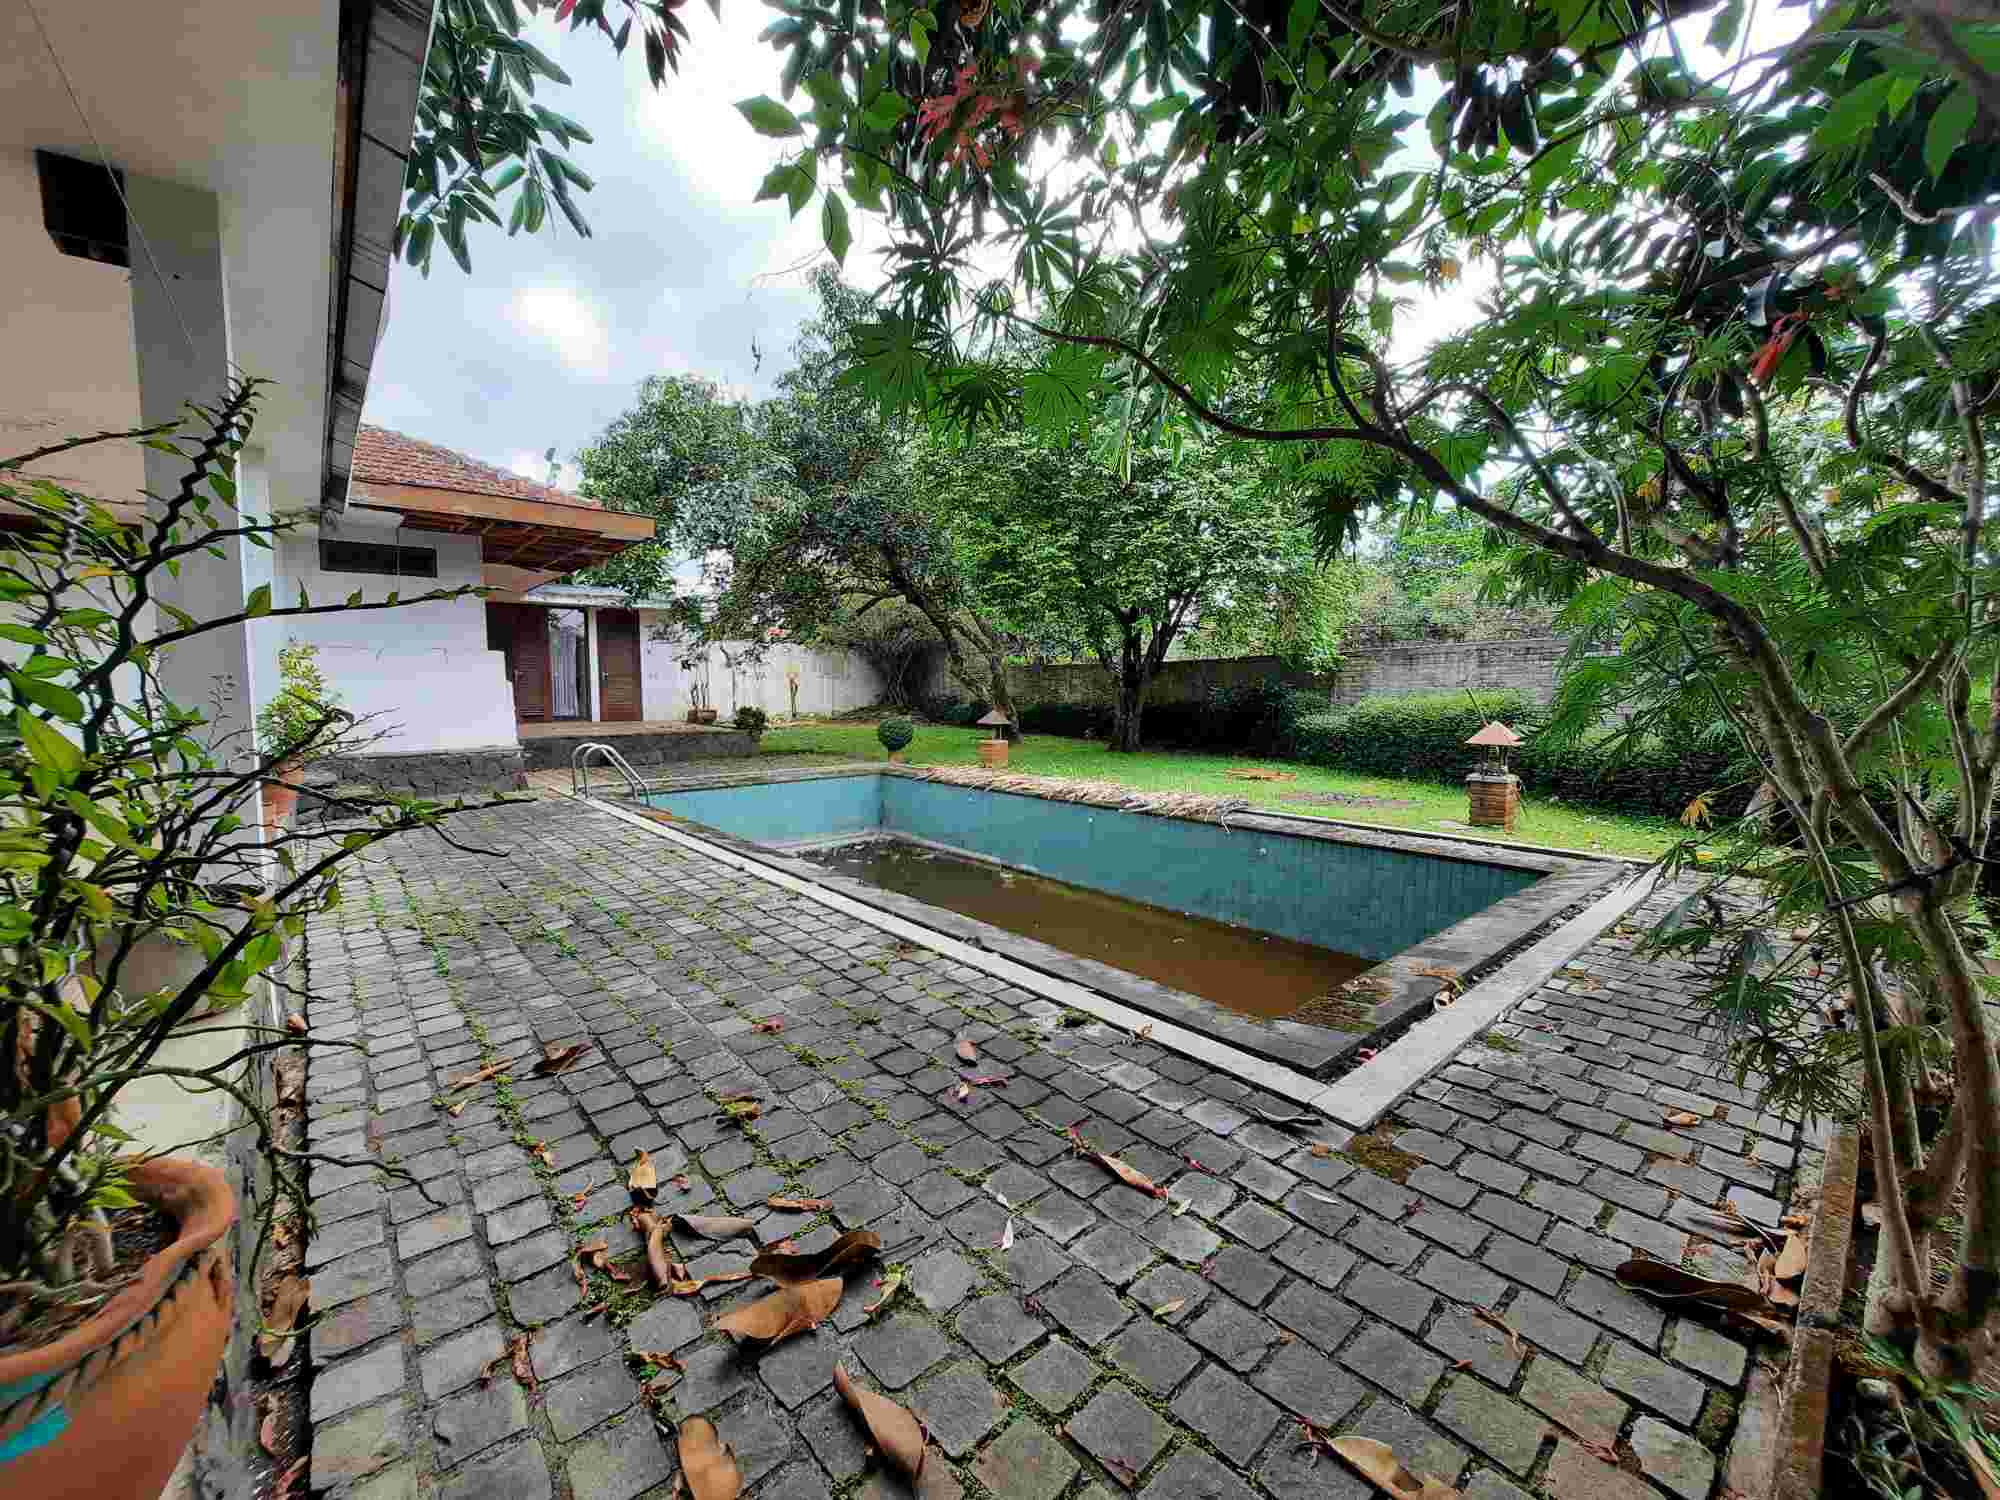 Rumah Posisi Hoek Hitung Harga Tanah hanya 2 belokan dari Universitas Parahyangan Ciumbuleuit Bandung Utara